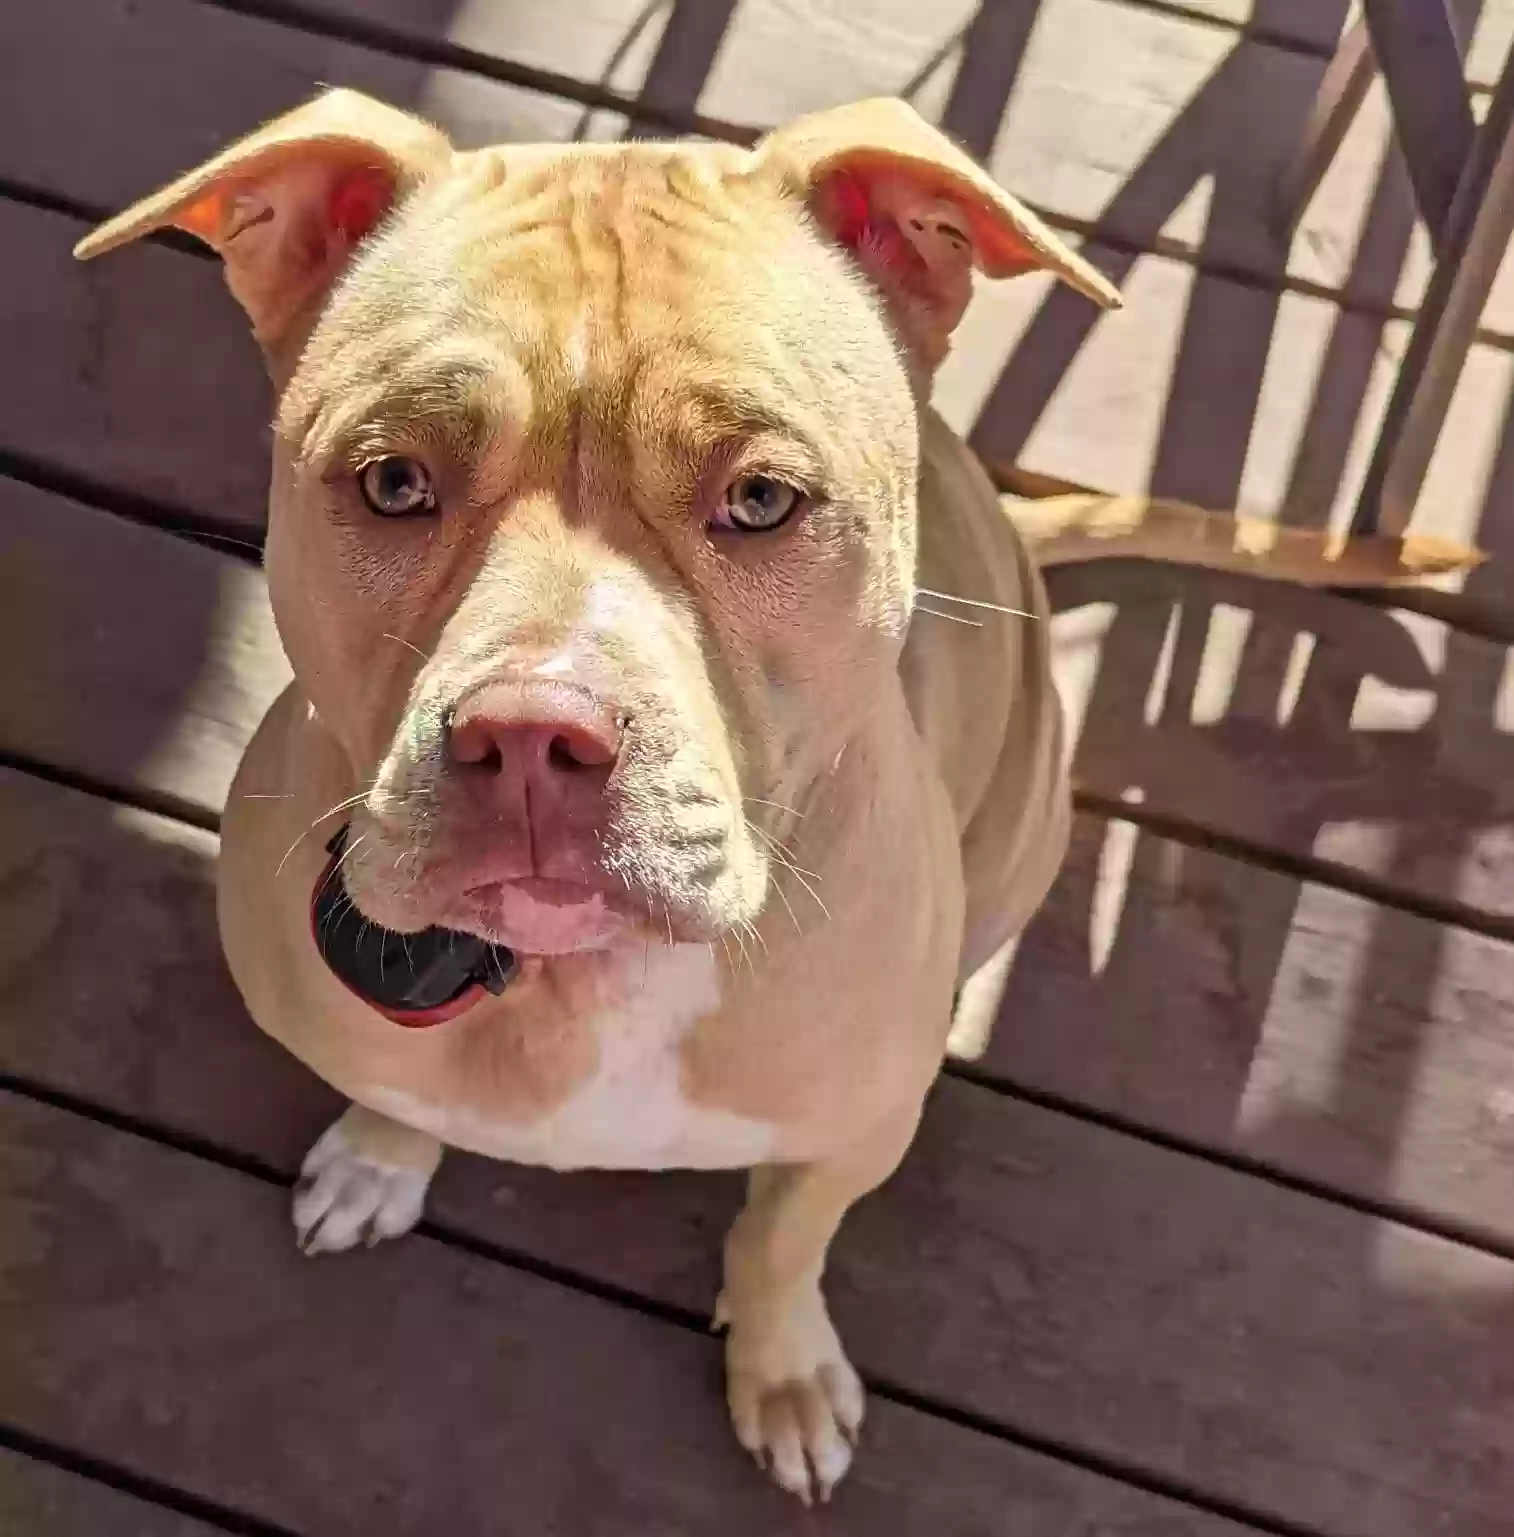 adoptable Dog in Marietta,GA named Nala